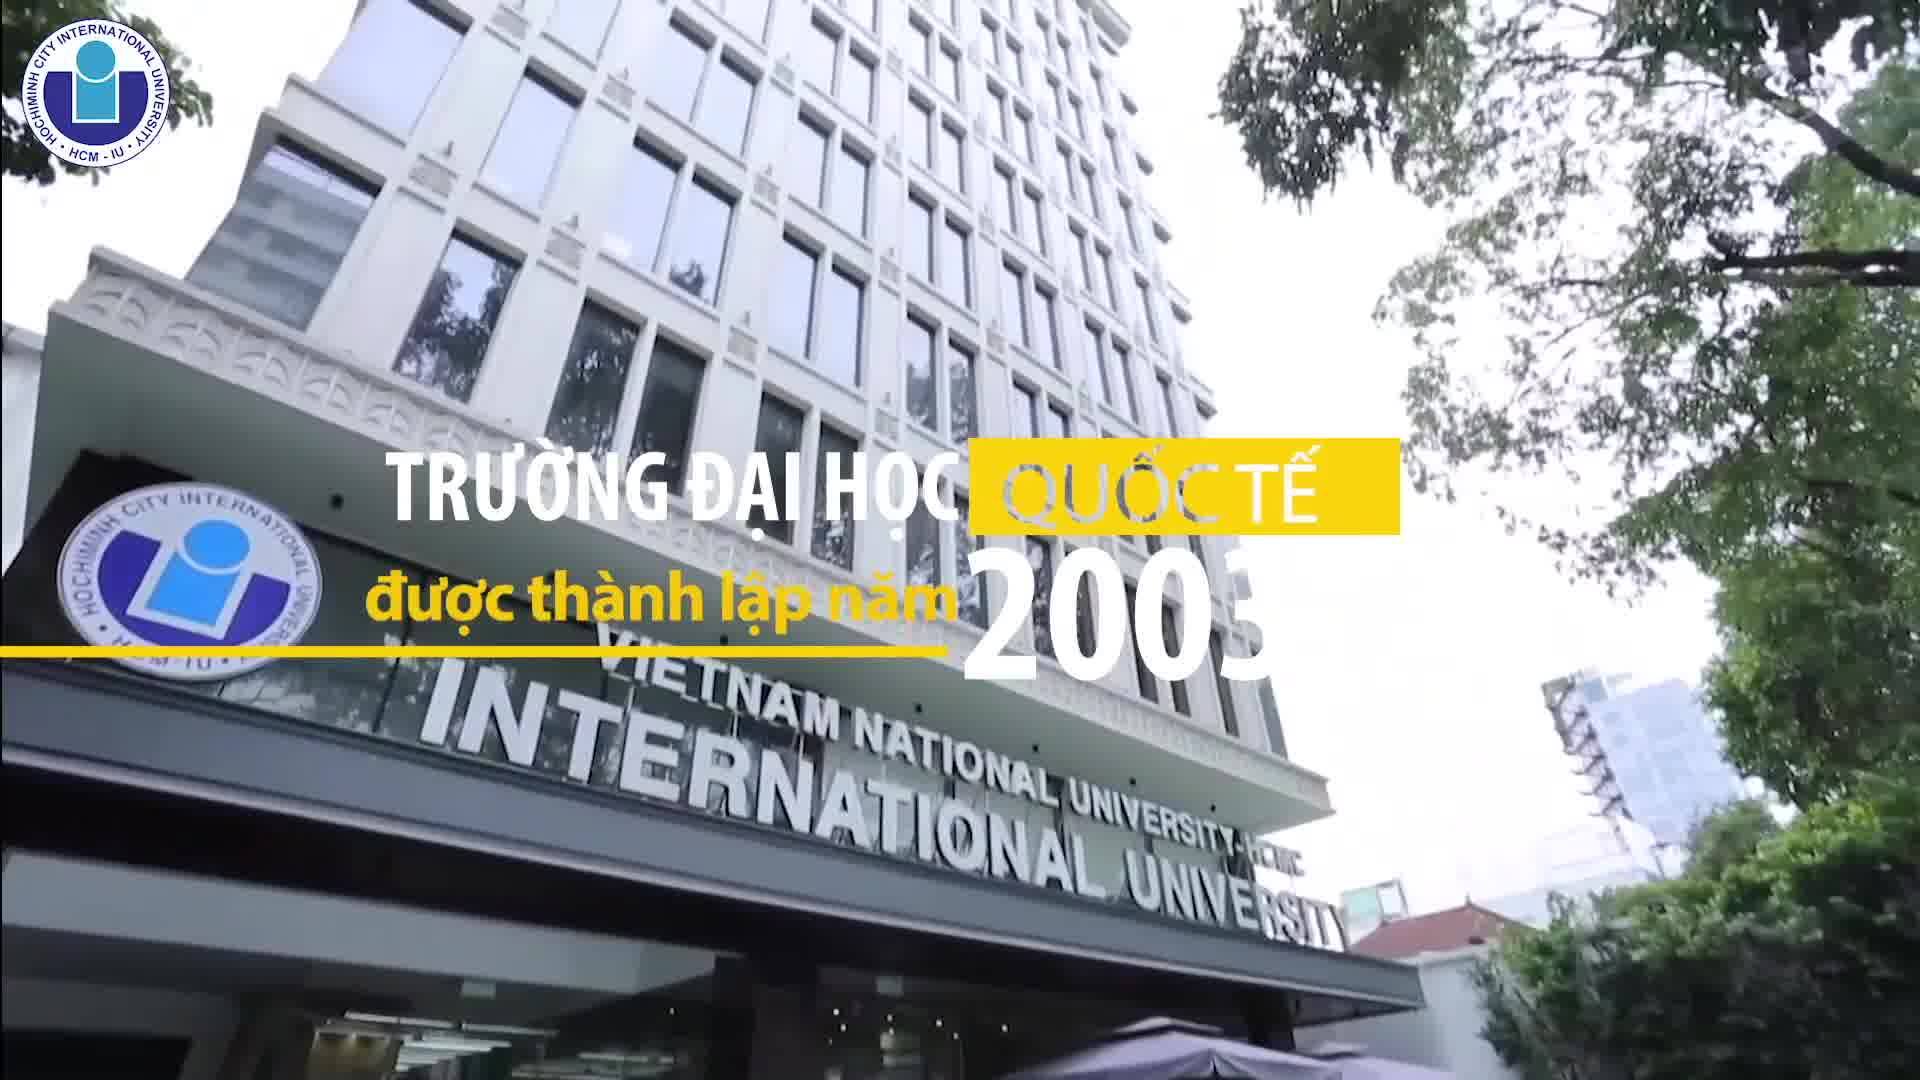 Trường Đại học Quốc tế (Đại học quốc gia thành phố Hồ Chí Minh) ảnh 1